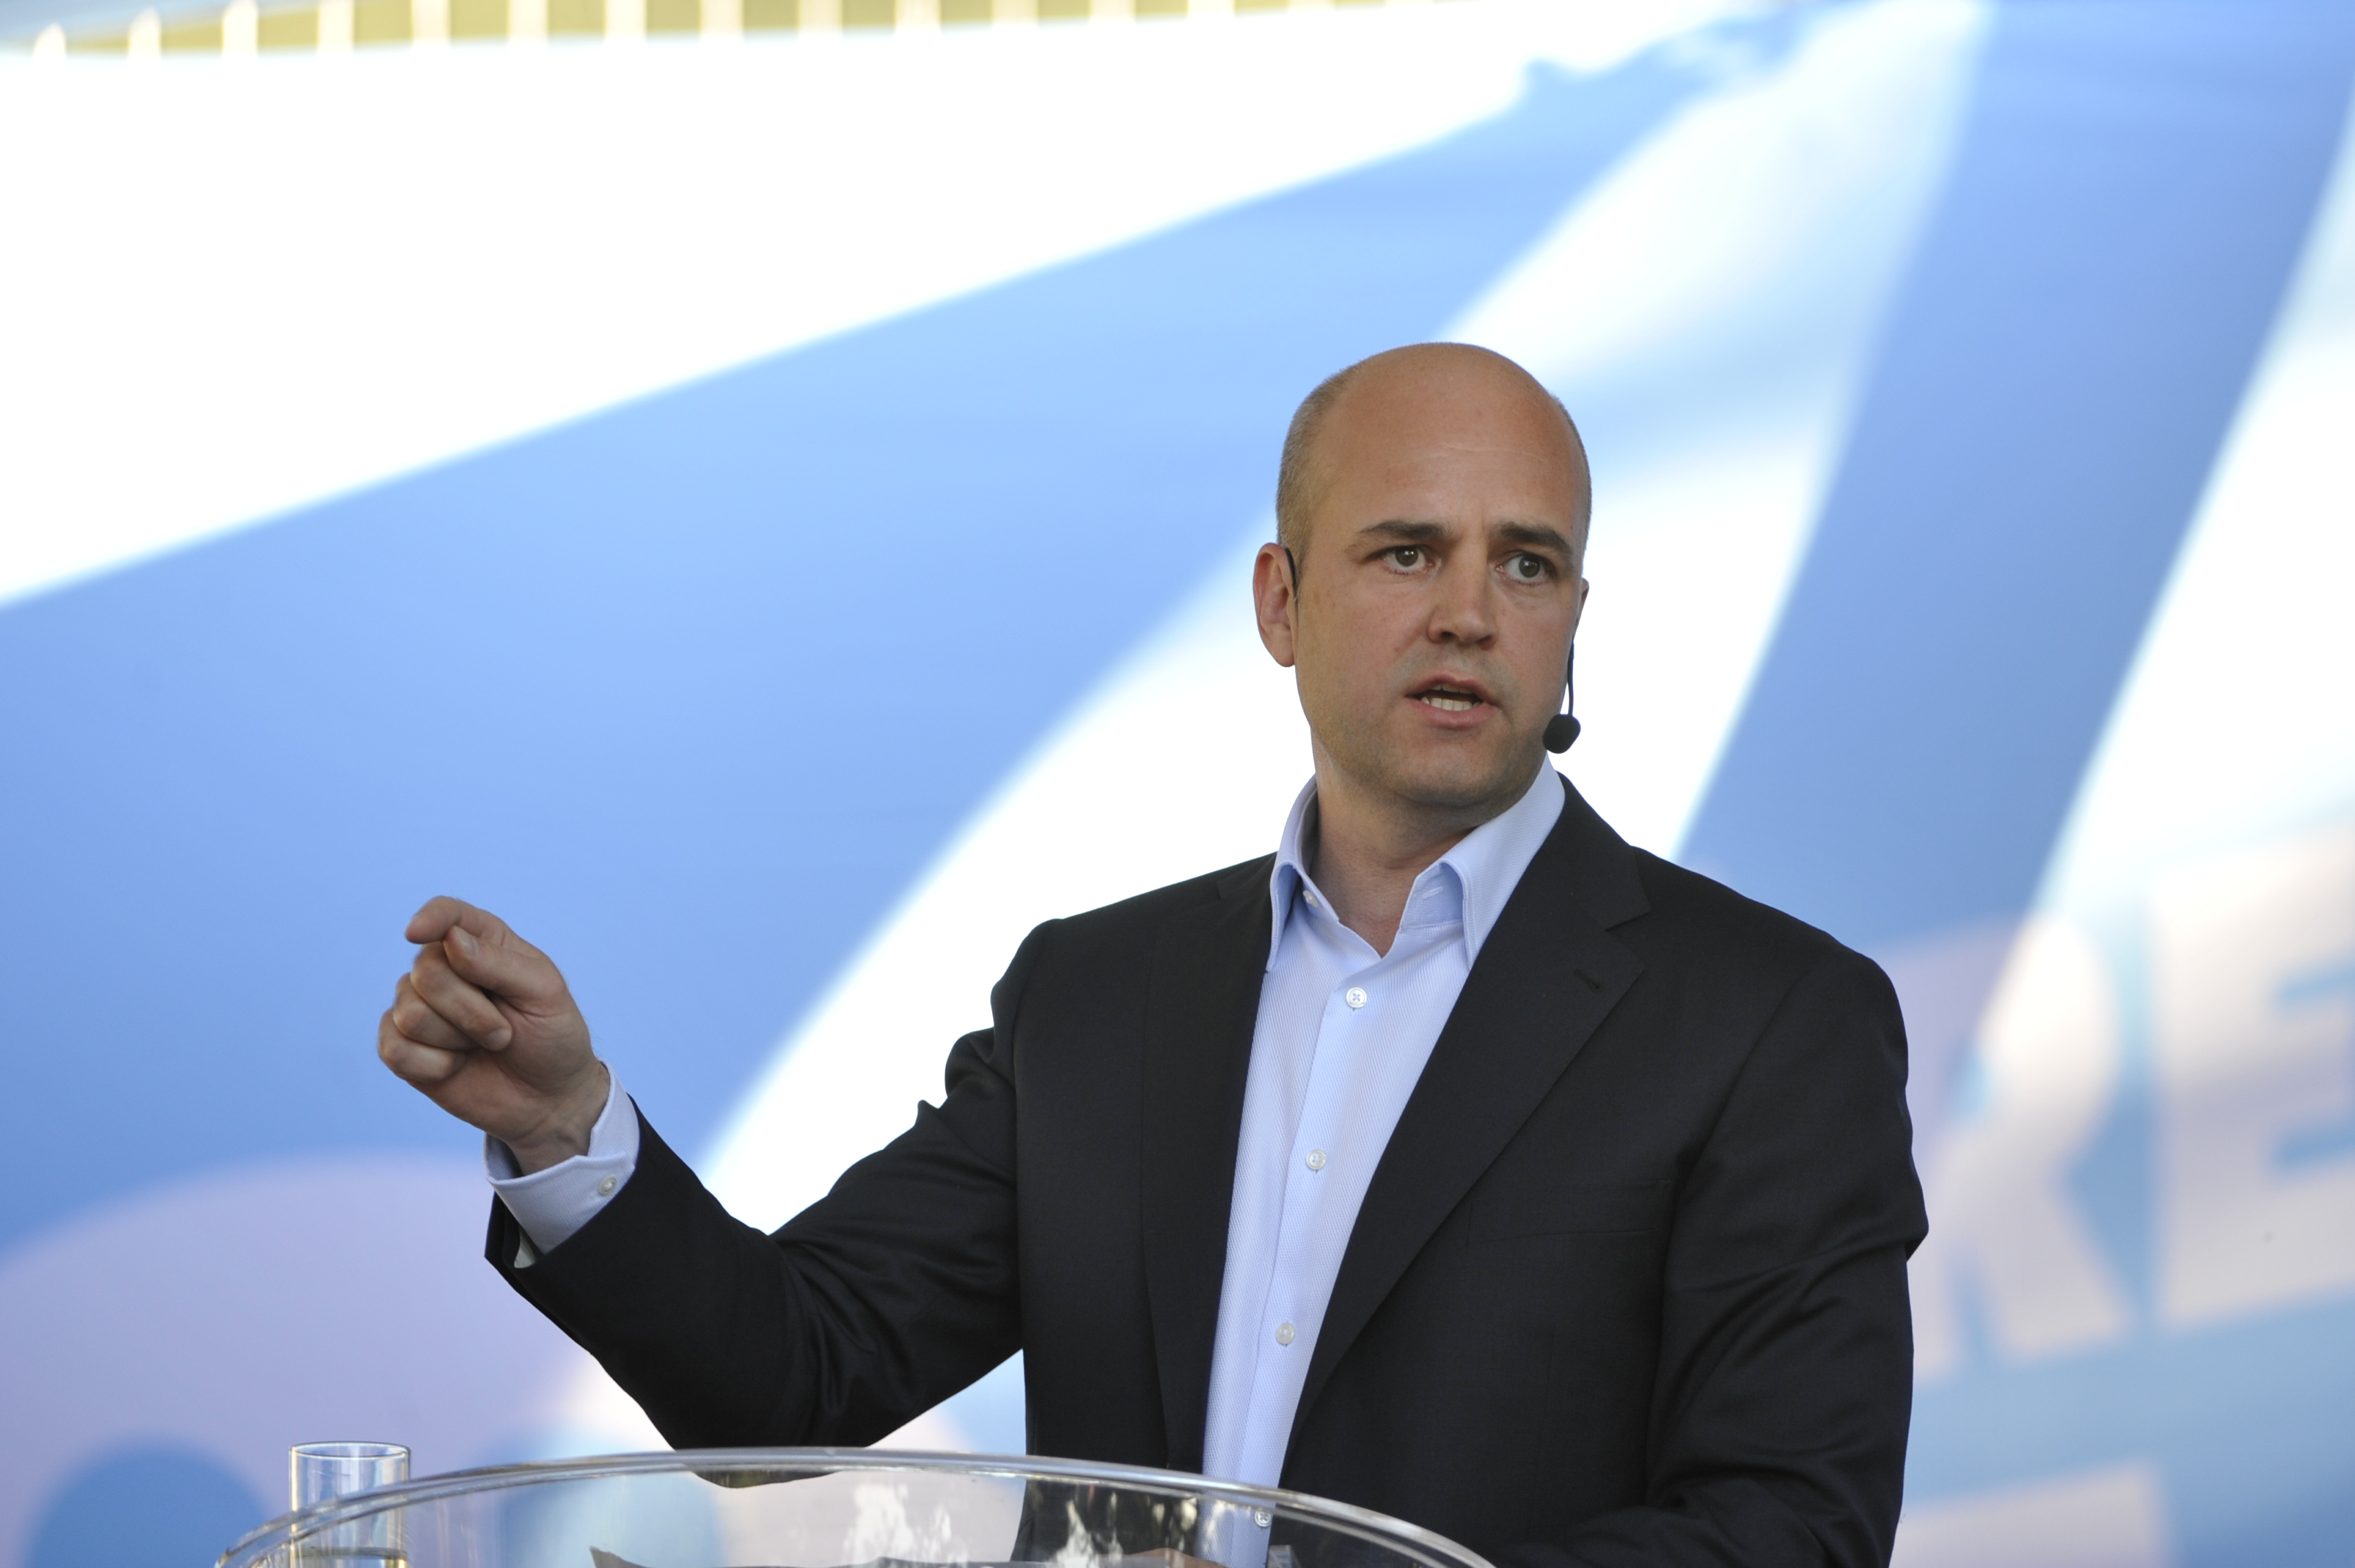 Reinfeldts tal orsakade kraftiga reaktioner på Twitter.